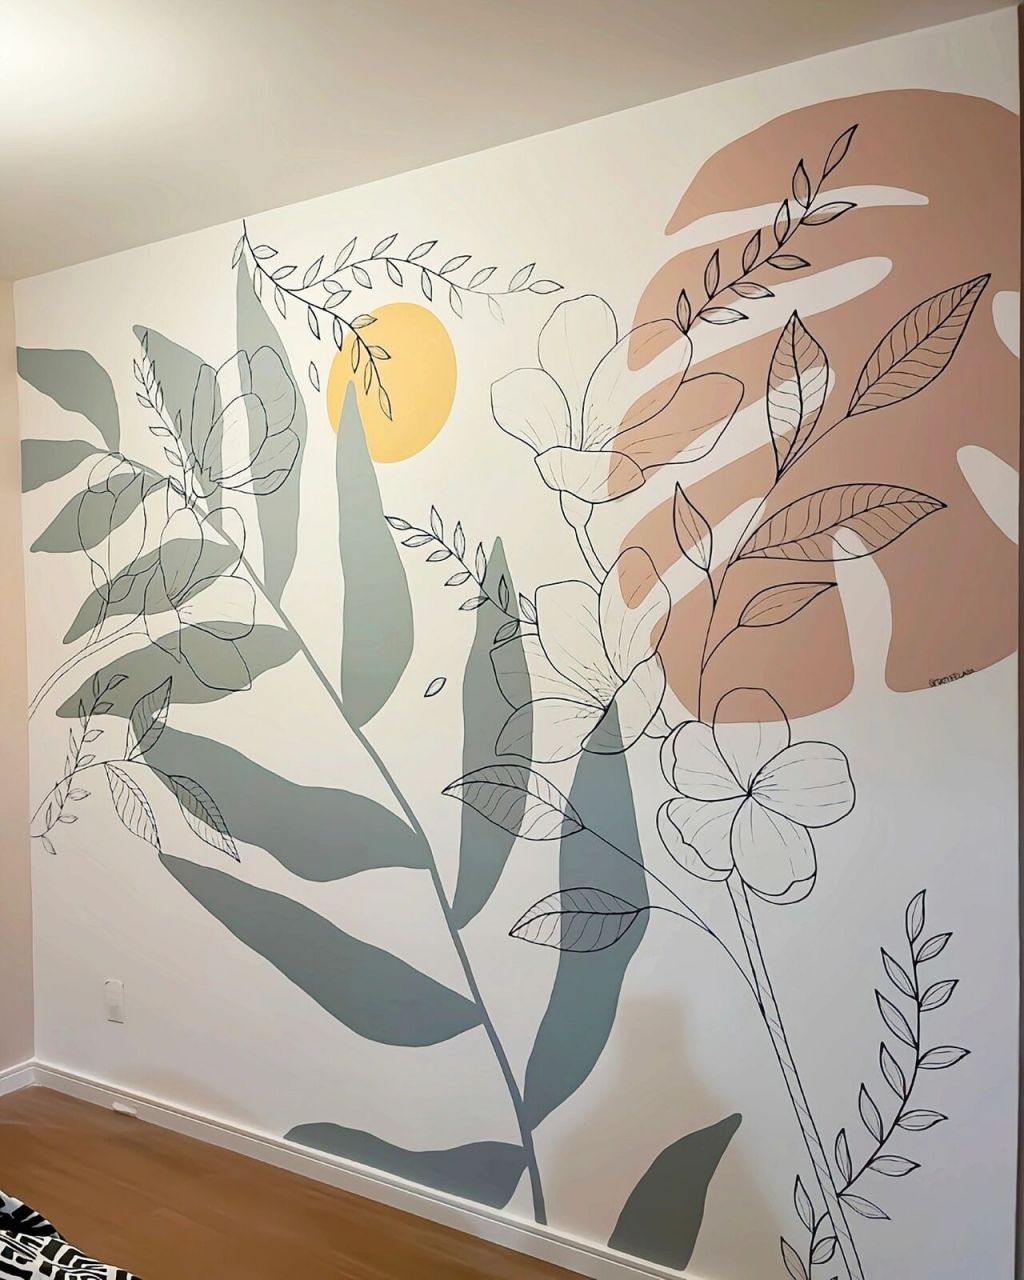 卧室ins风墙绘壁画 卧室ins风墙绘壁画作品分享,清新自然的画面让人心